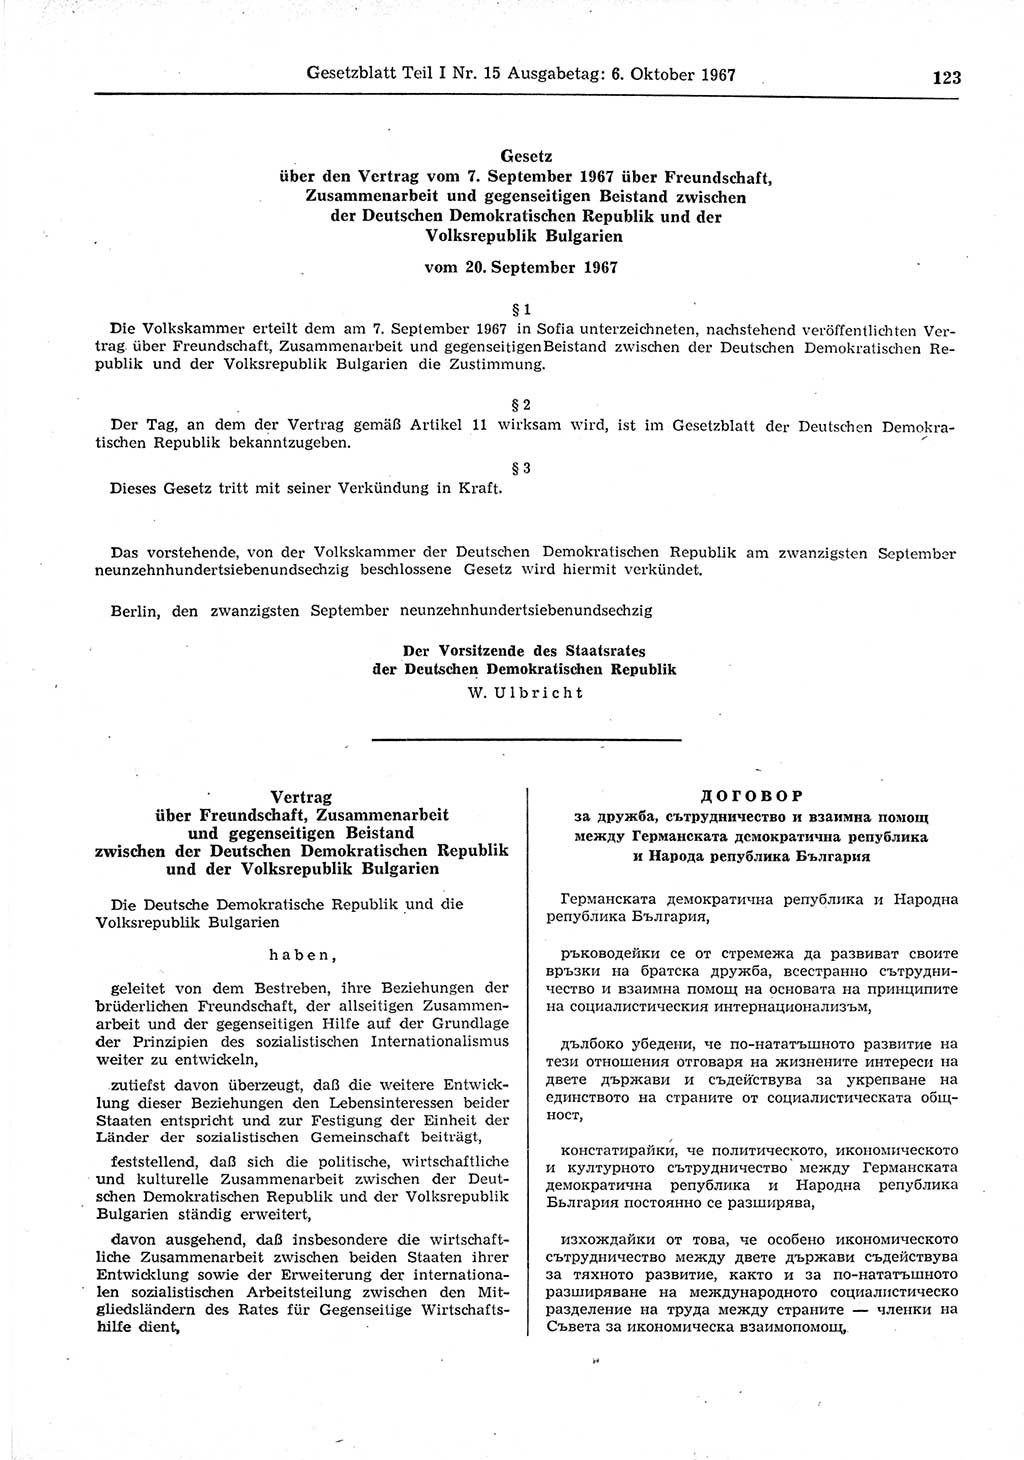 Gesetzblatt (GBl.) der Deutschen Demokratischen Republik (DDR) Teil Ⅰ 1967, Seite 123 (GBl. DDR Ⅰ 1967, S. 123)